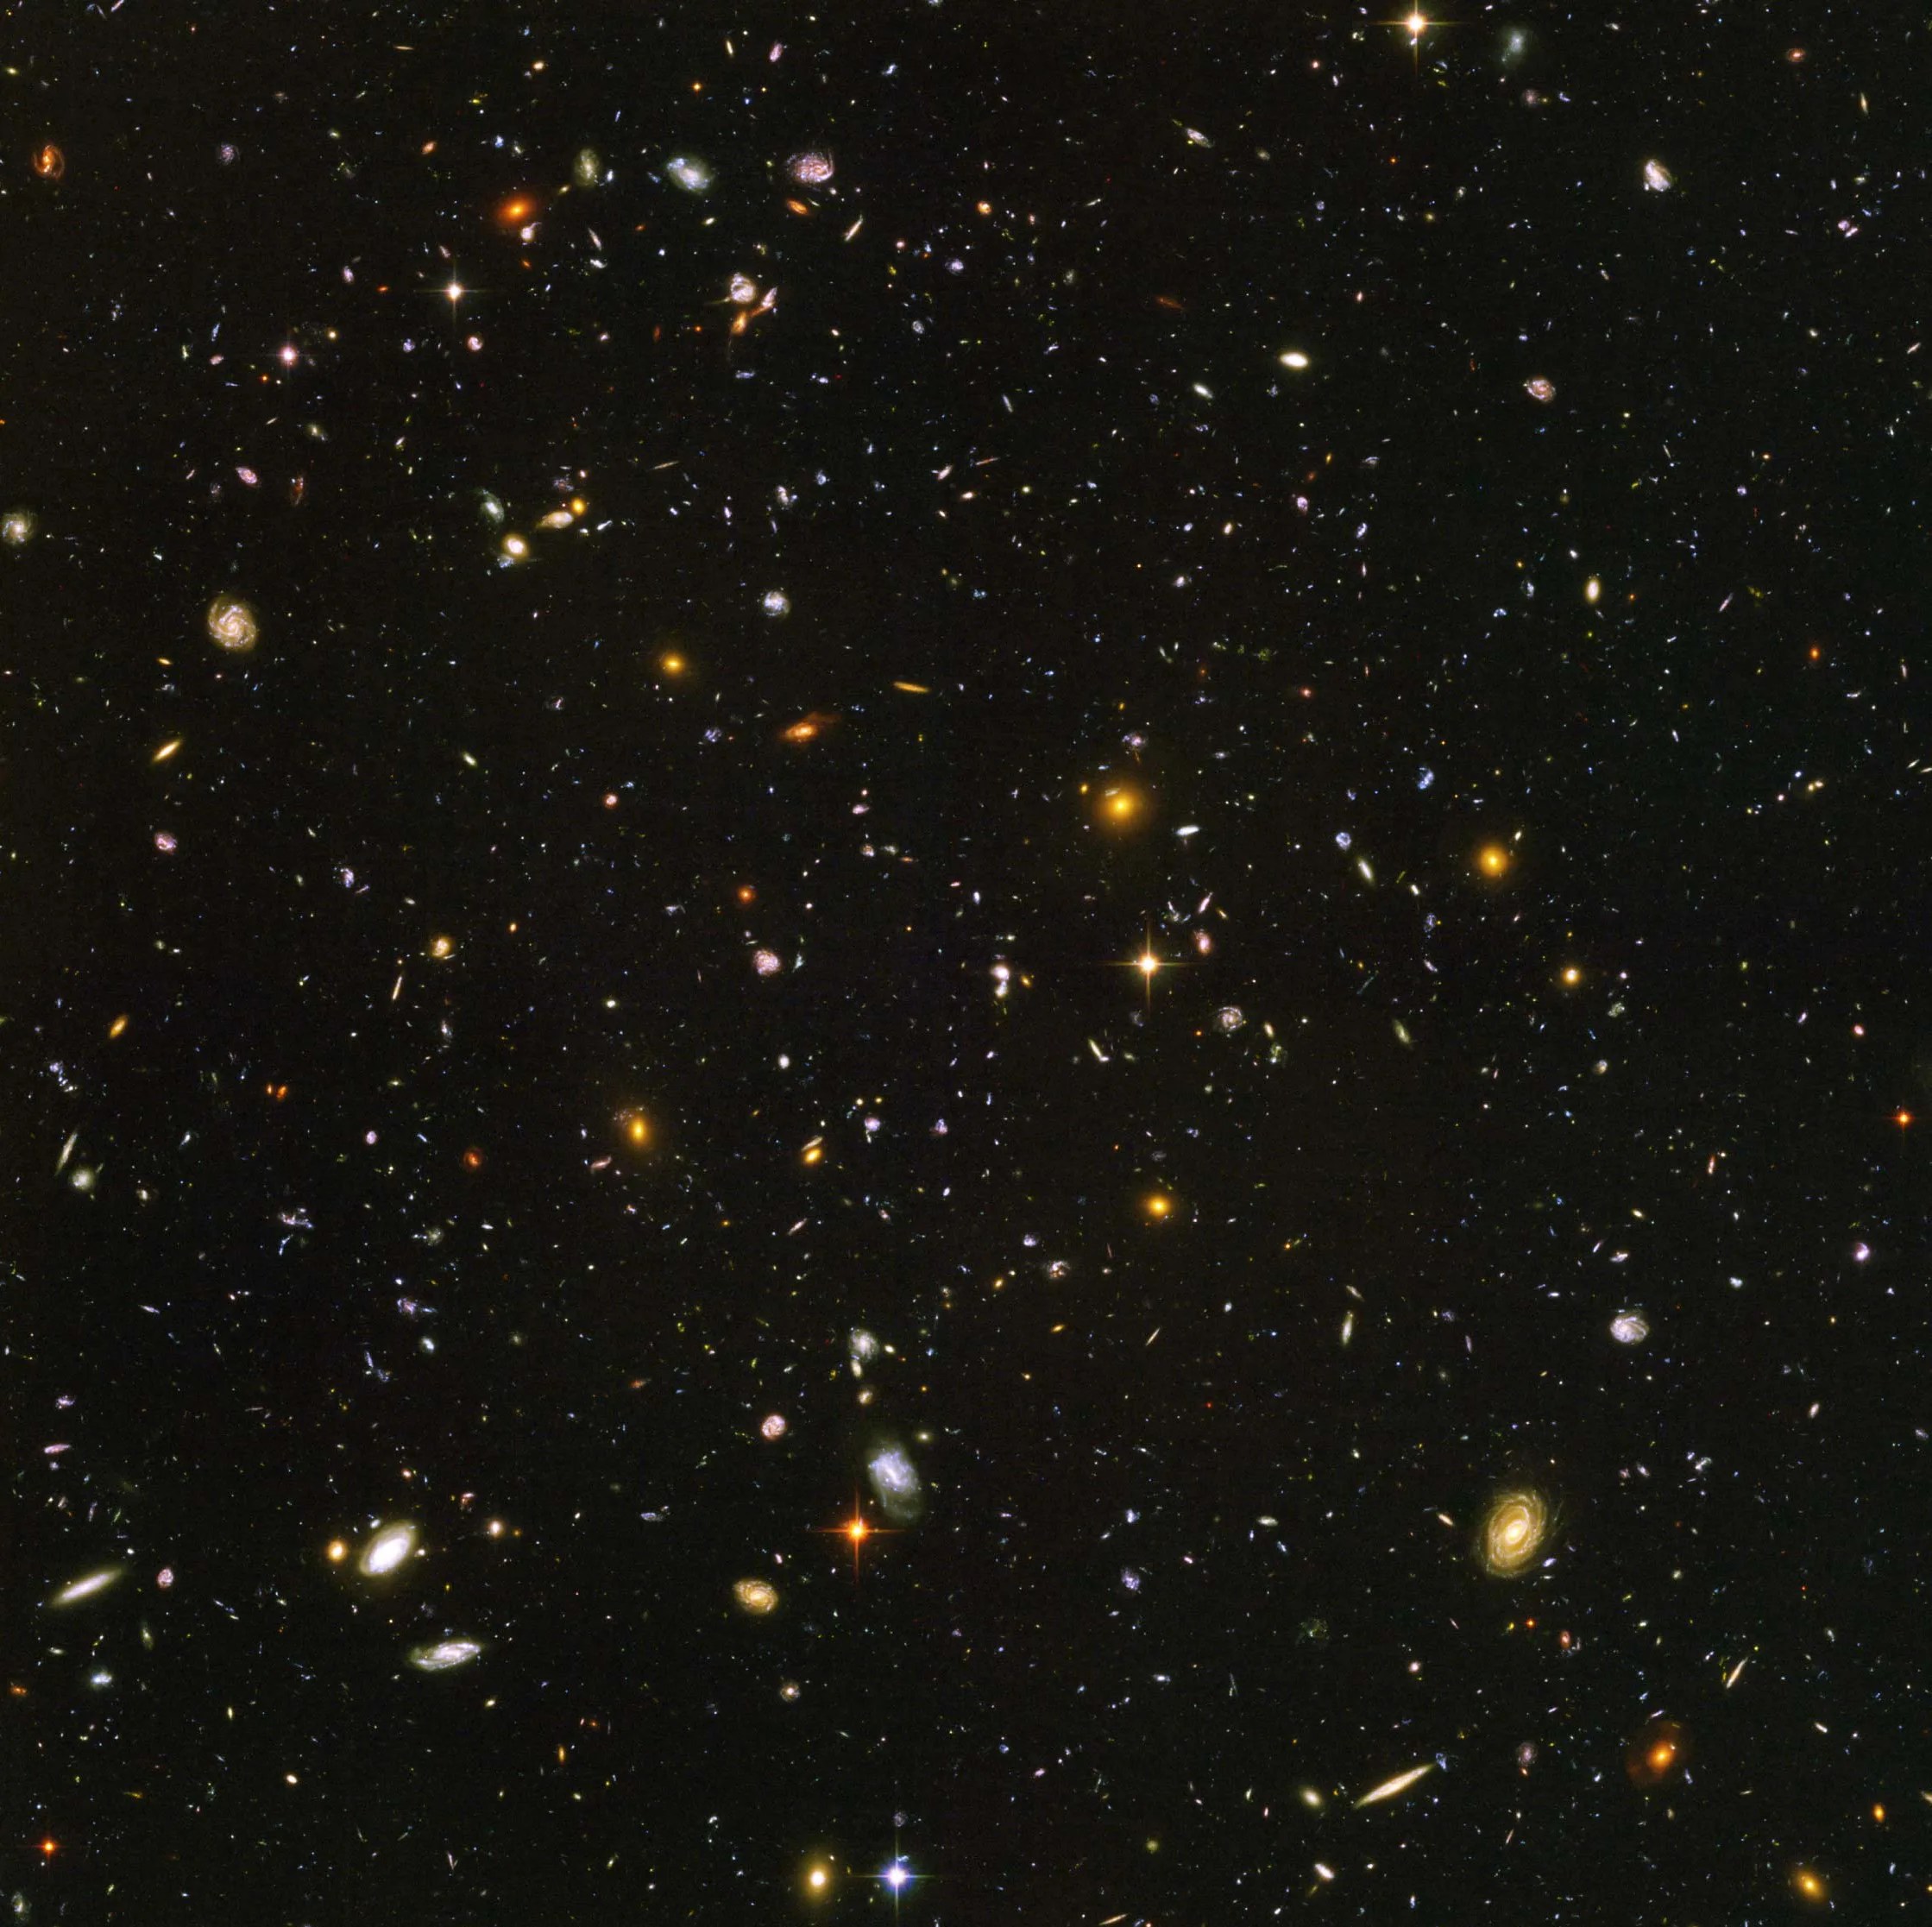 Hubble Ultra Deep Field image